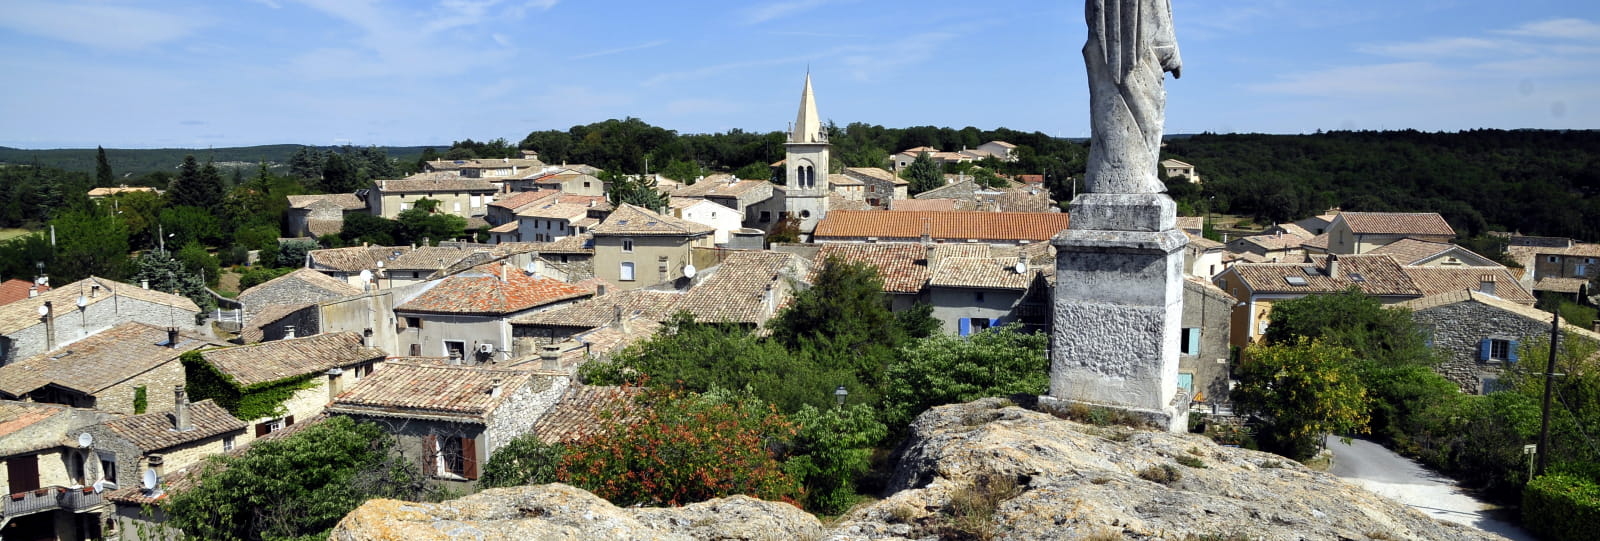 Vue générale - Village de Réauville